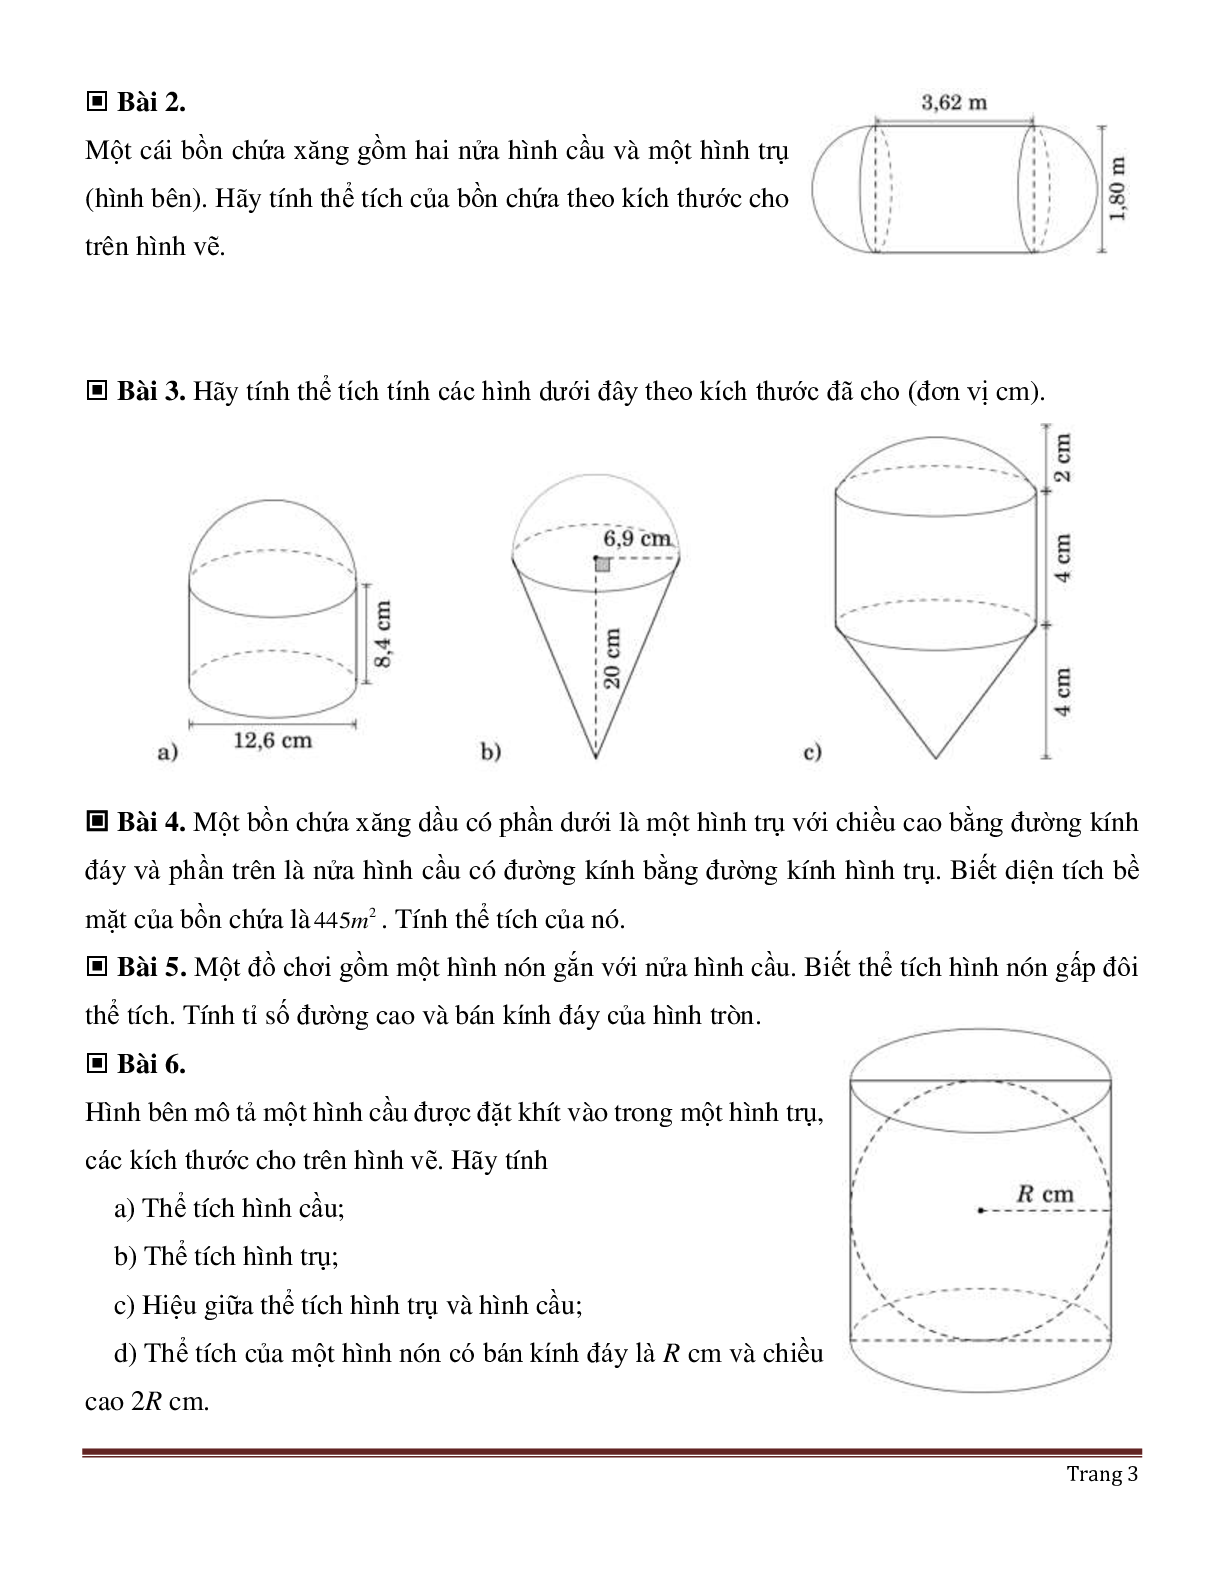 Lý thuyết, bài tập về Diện tích mặt cầu và thể tích hình cầu (trang 3)